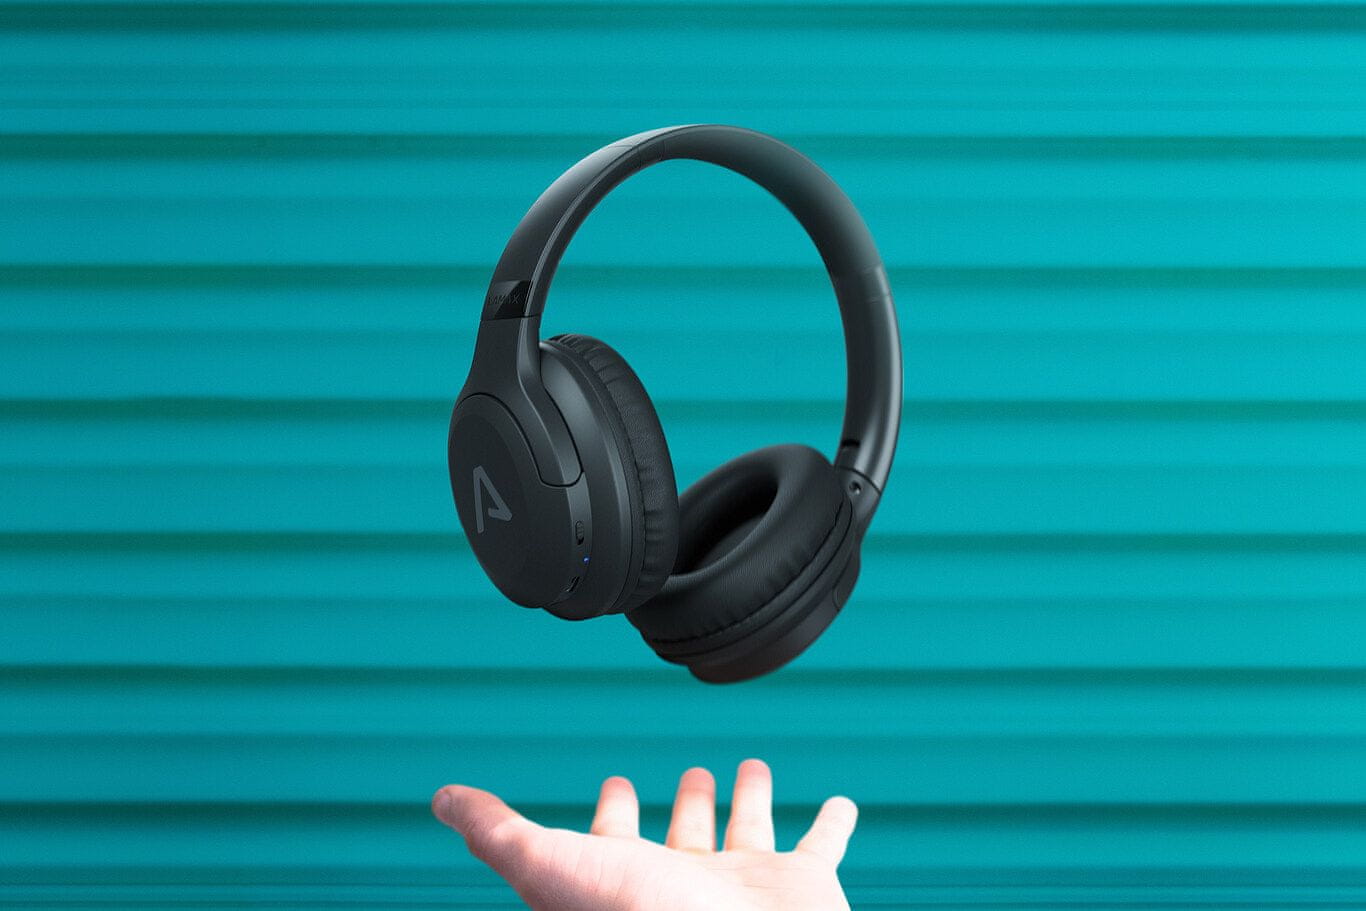  bezdrátová Bluetooth sluchátka lamax base2 beatbass nezkreslený zvuk pohodlná konstrukce uzavřená hlasový asistent mikrofon pro handsfree dlouhá výdrž na nabití zabudované ovládání 